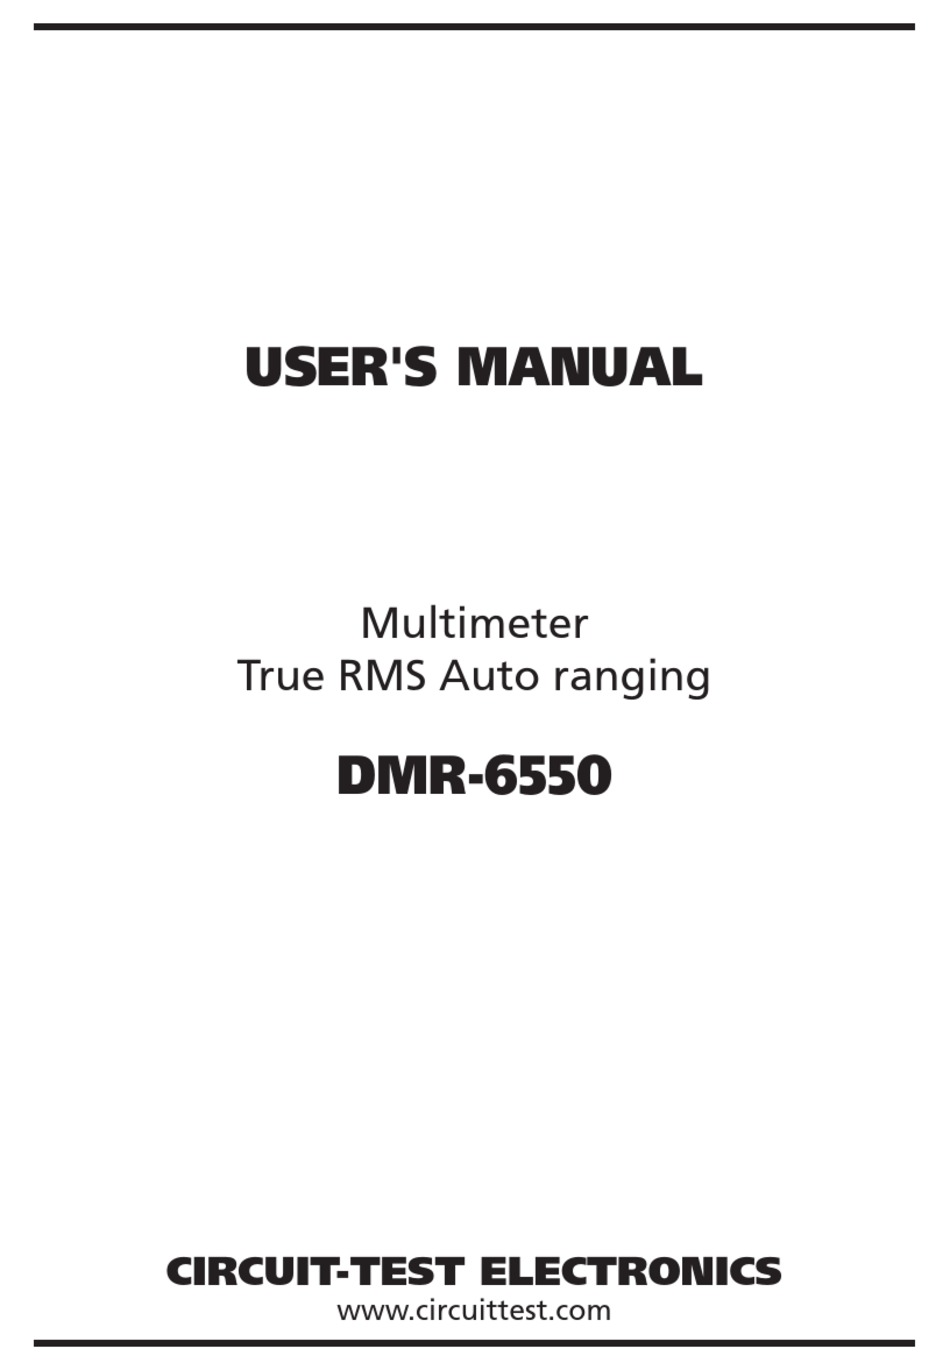 CIRCUIT-TEST DMR-6550 USER MANUAL Pdf Download | ManualsLib